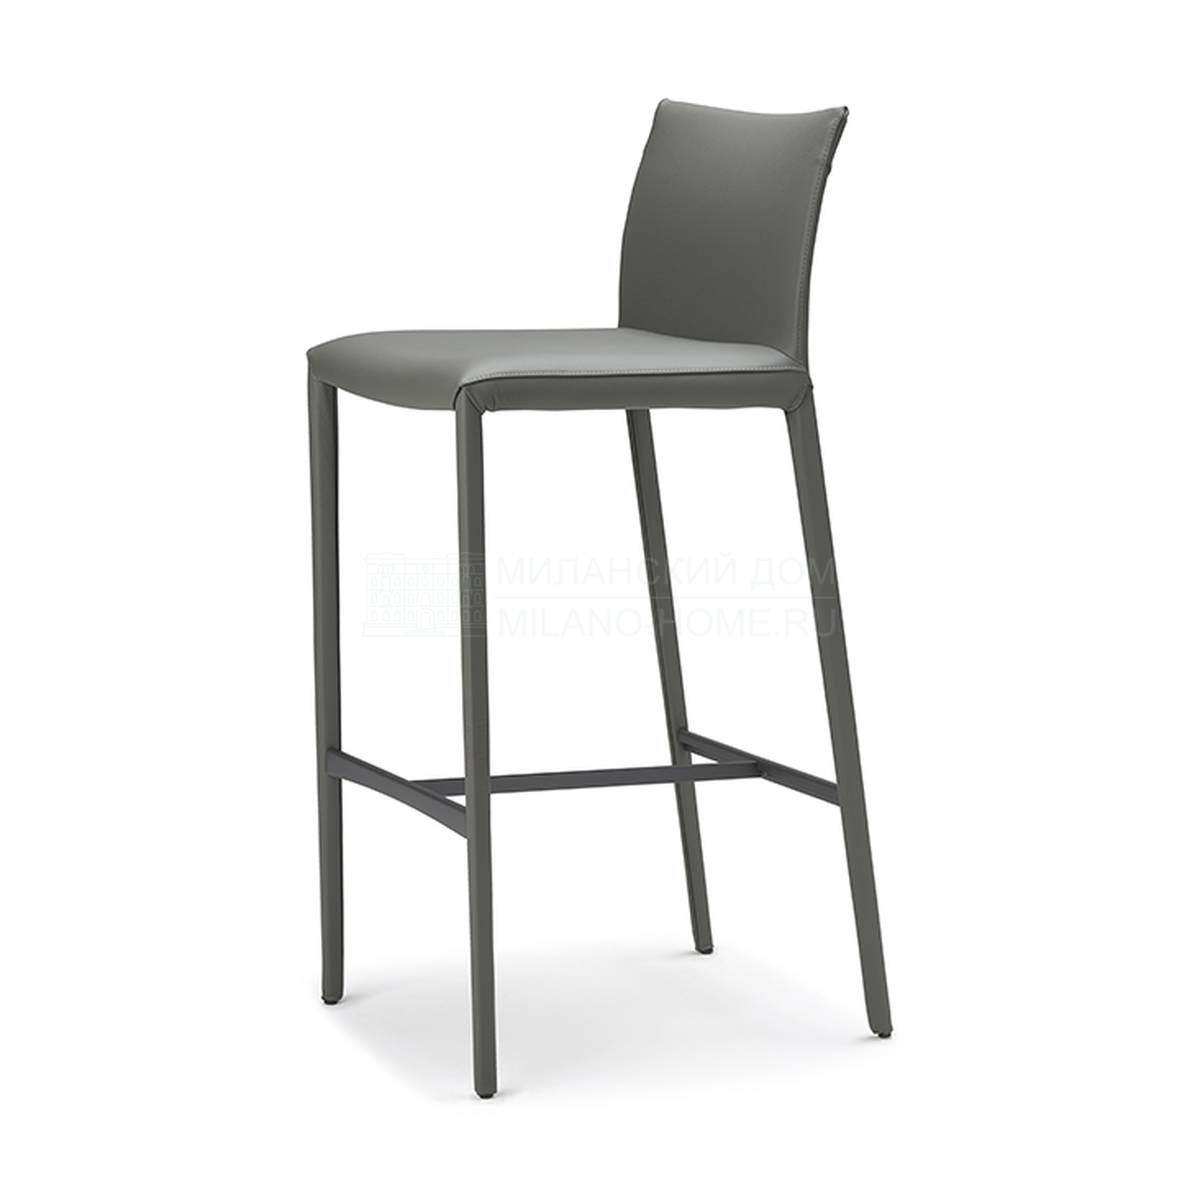 Барный стул Norma bar stool из Италии фабрики CATTELAN ITALIA